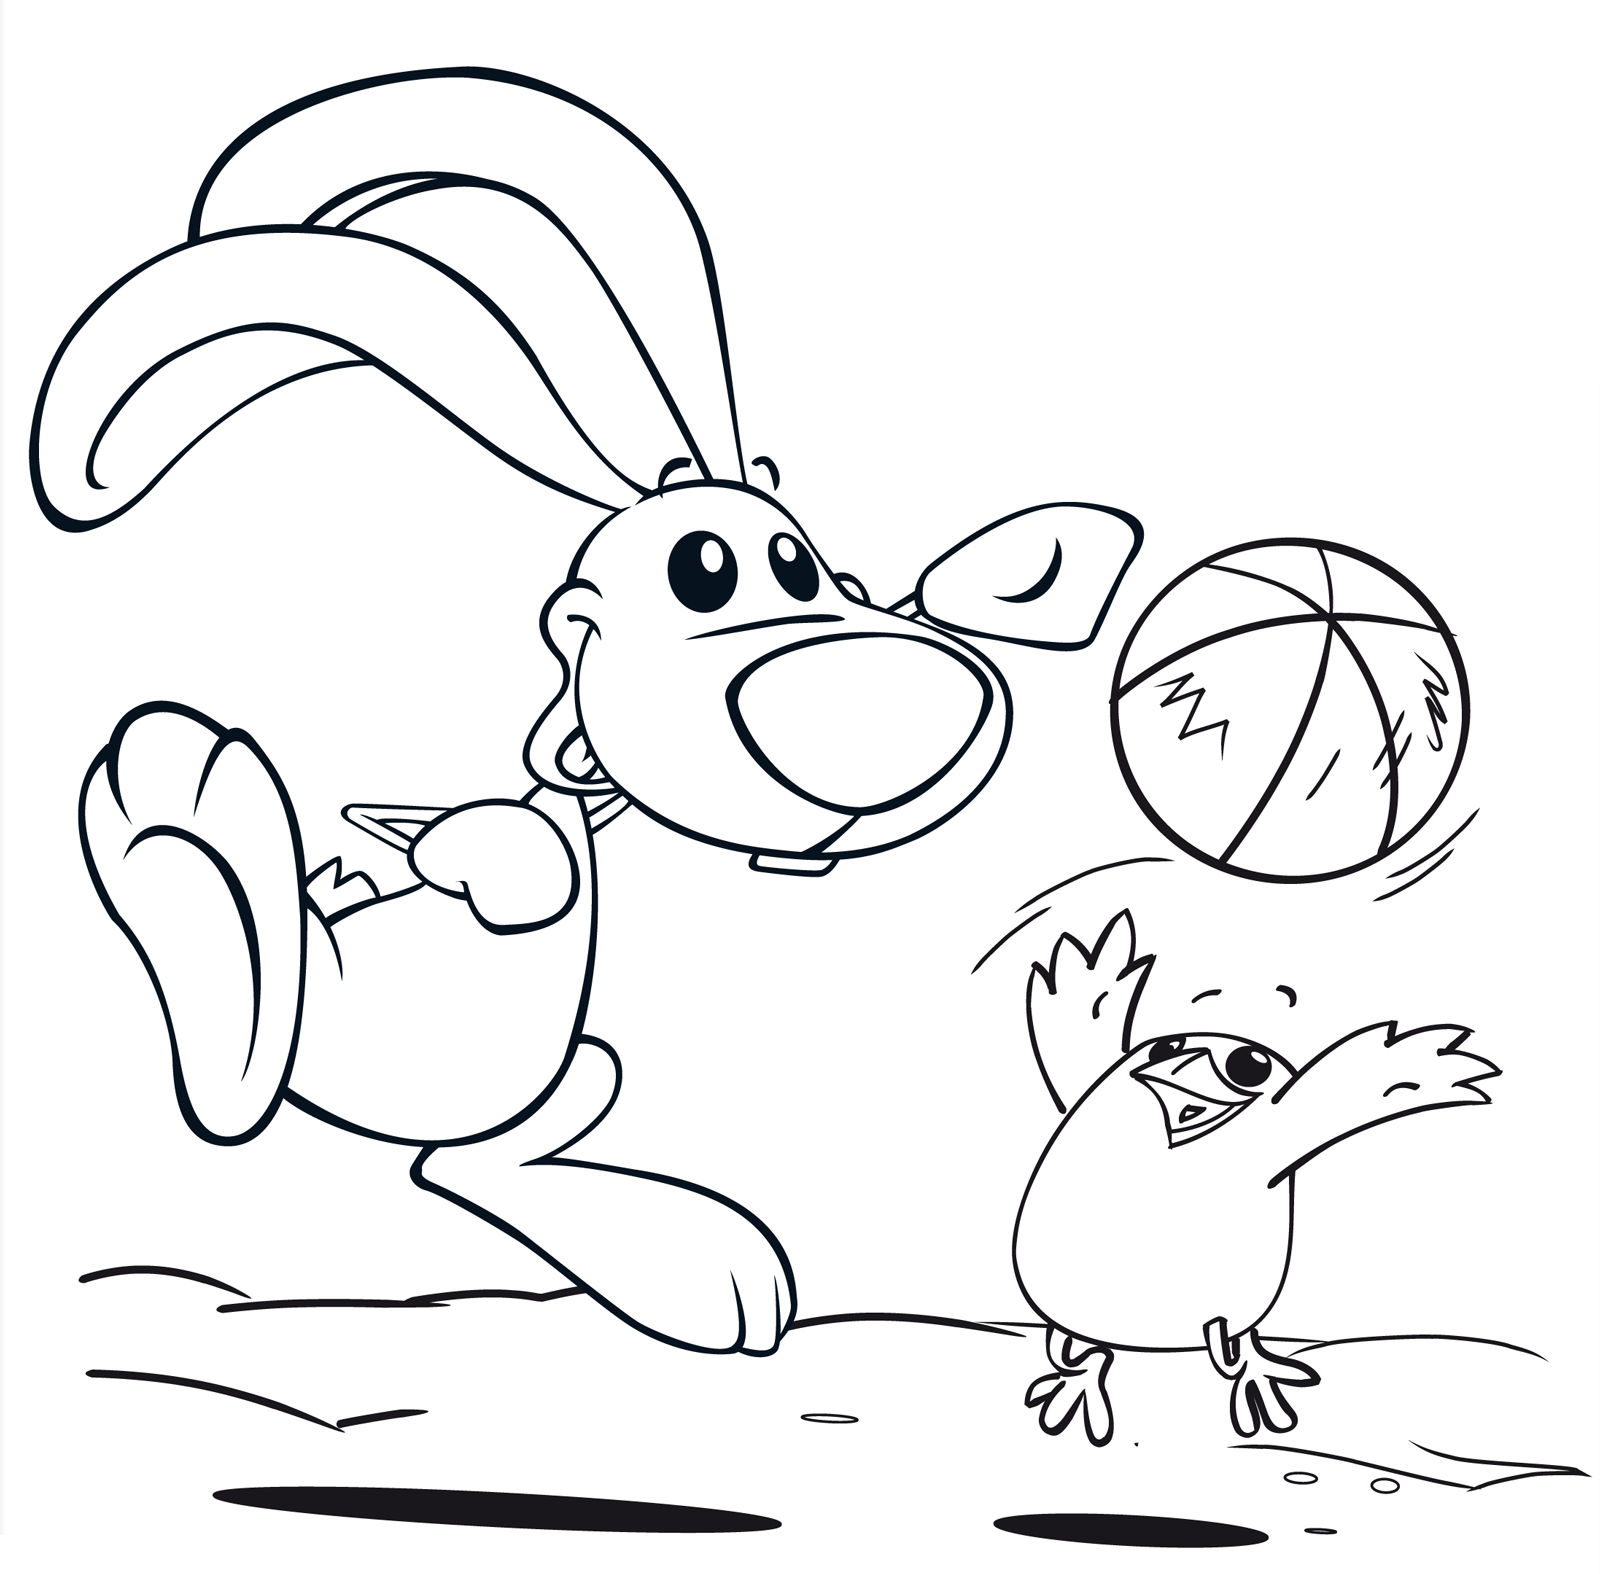 Cuccioli - Cilindro e Senzanome giocano a palla sulla spiaggia